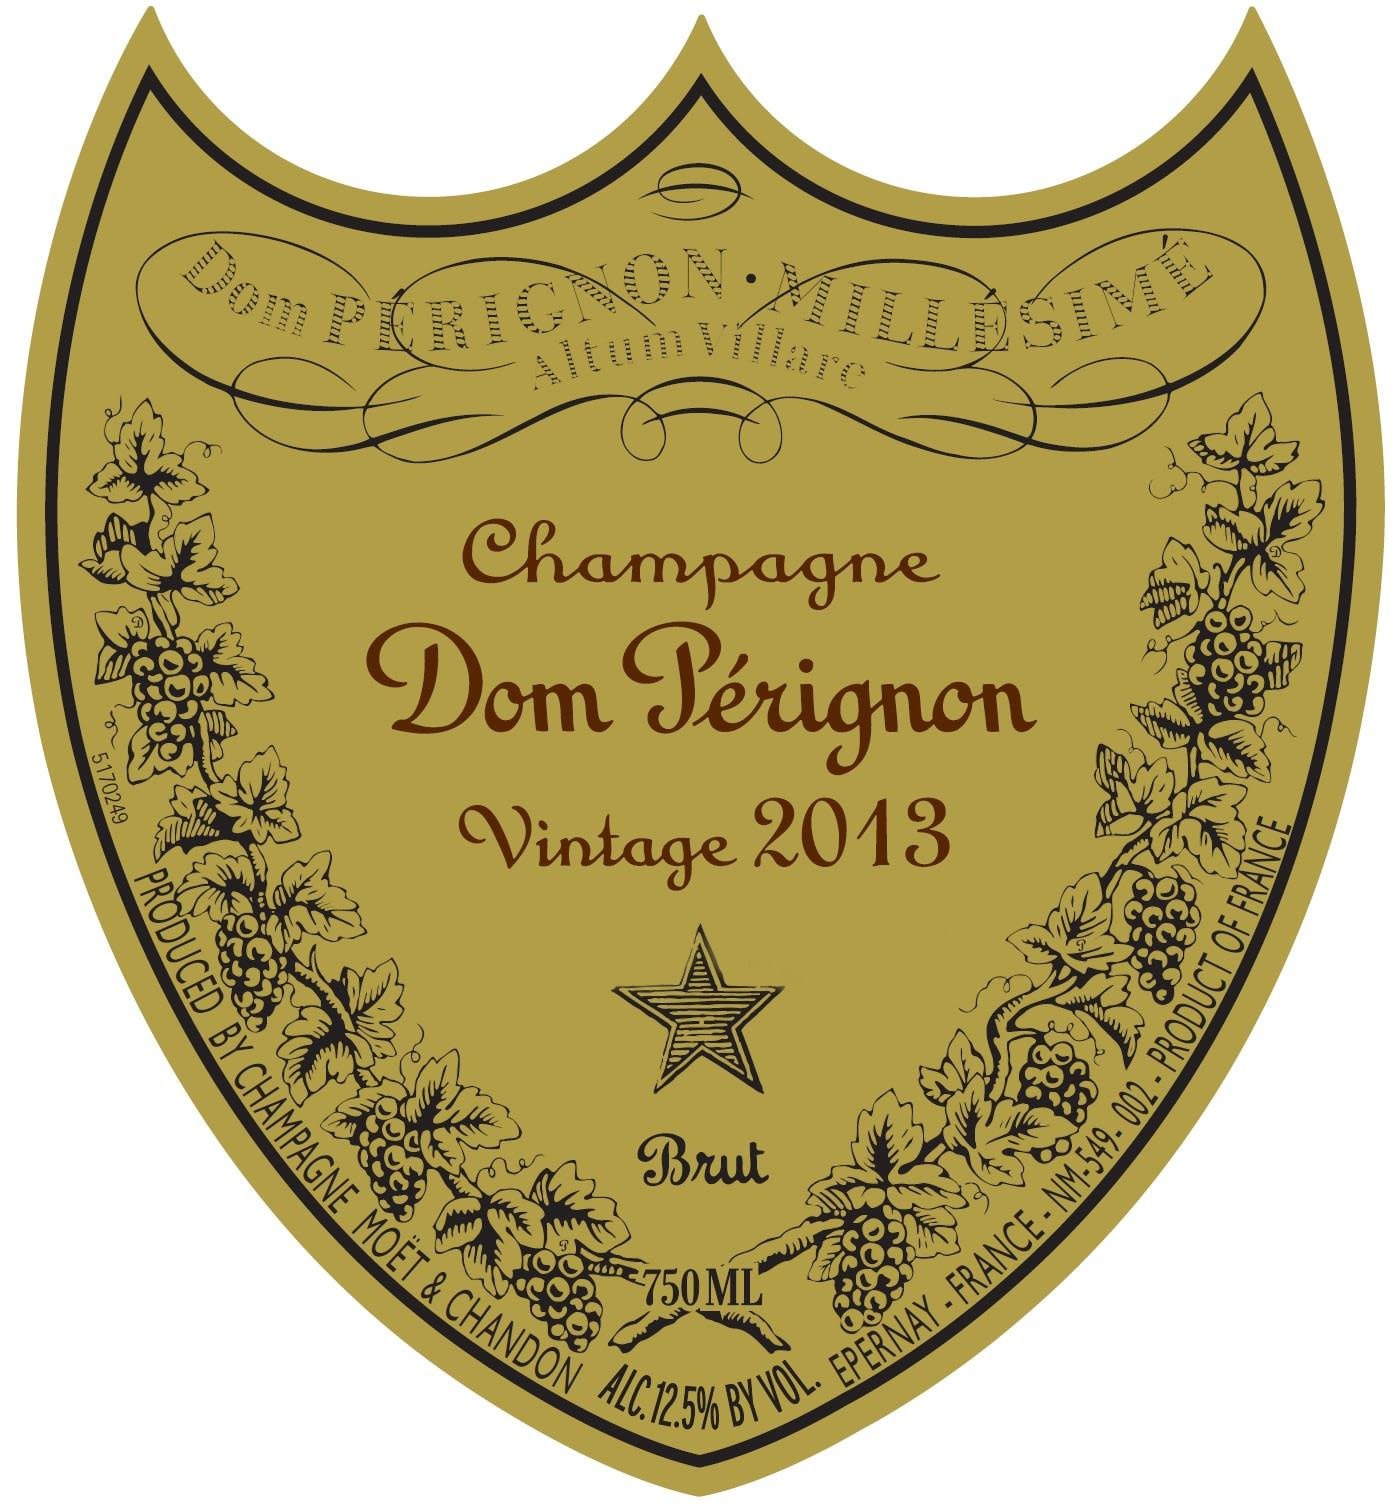 Creating Dom Pérignon – Medium